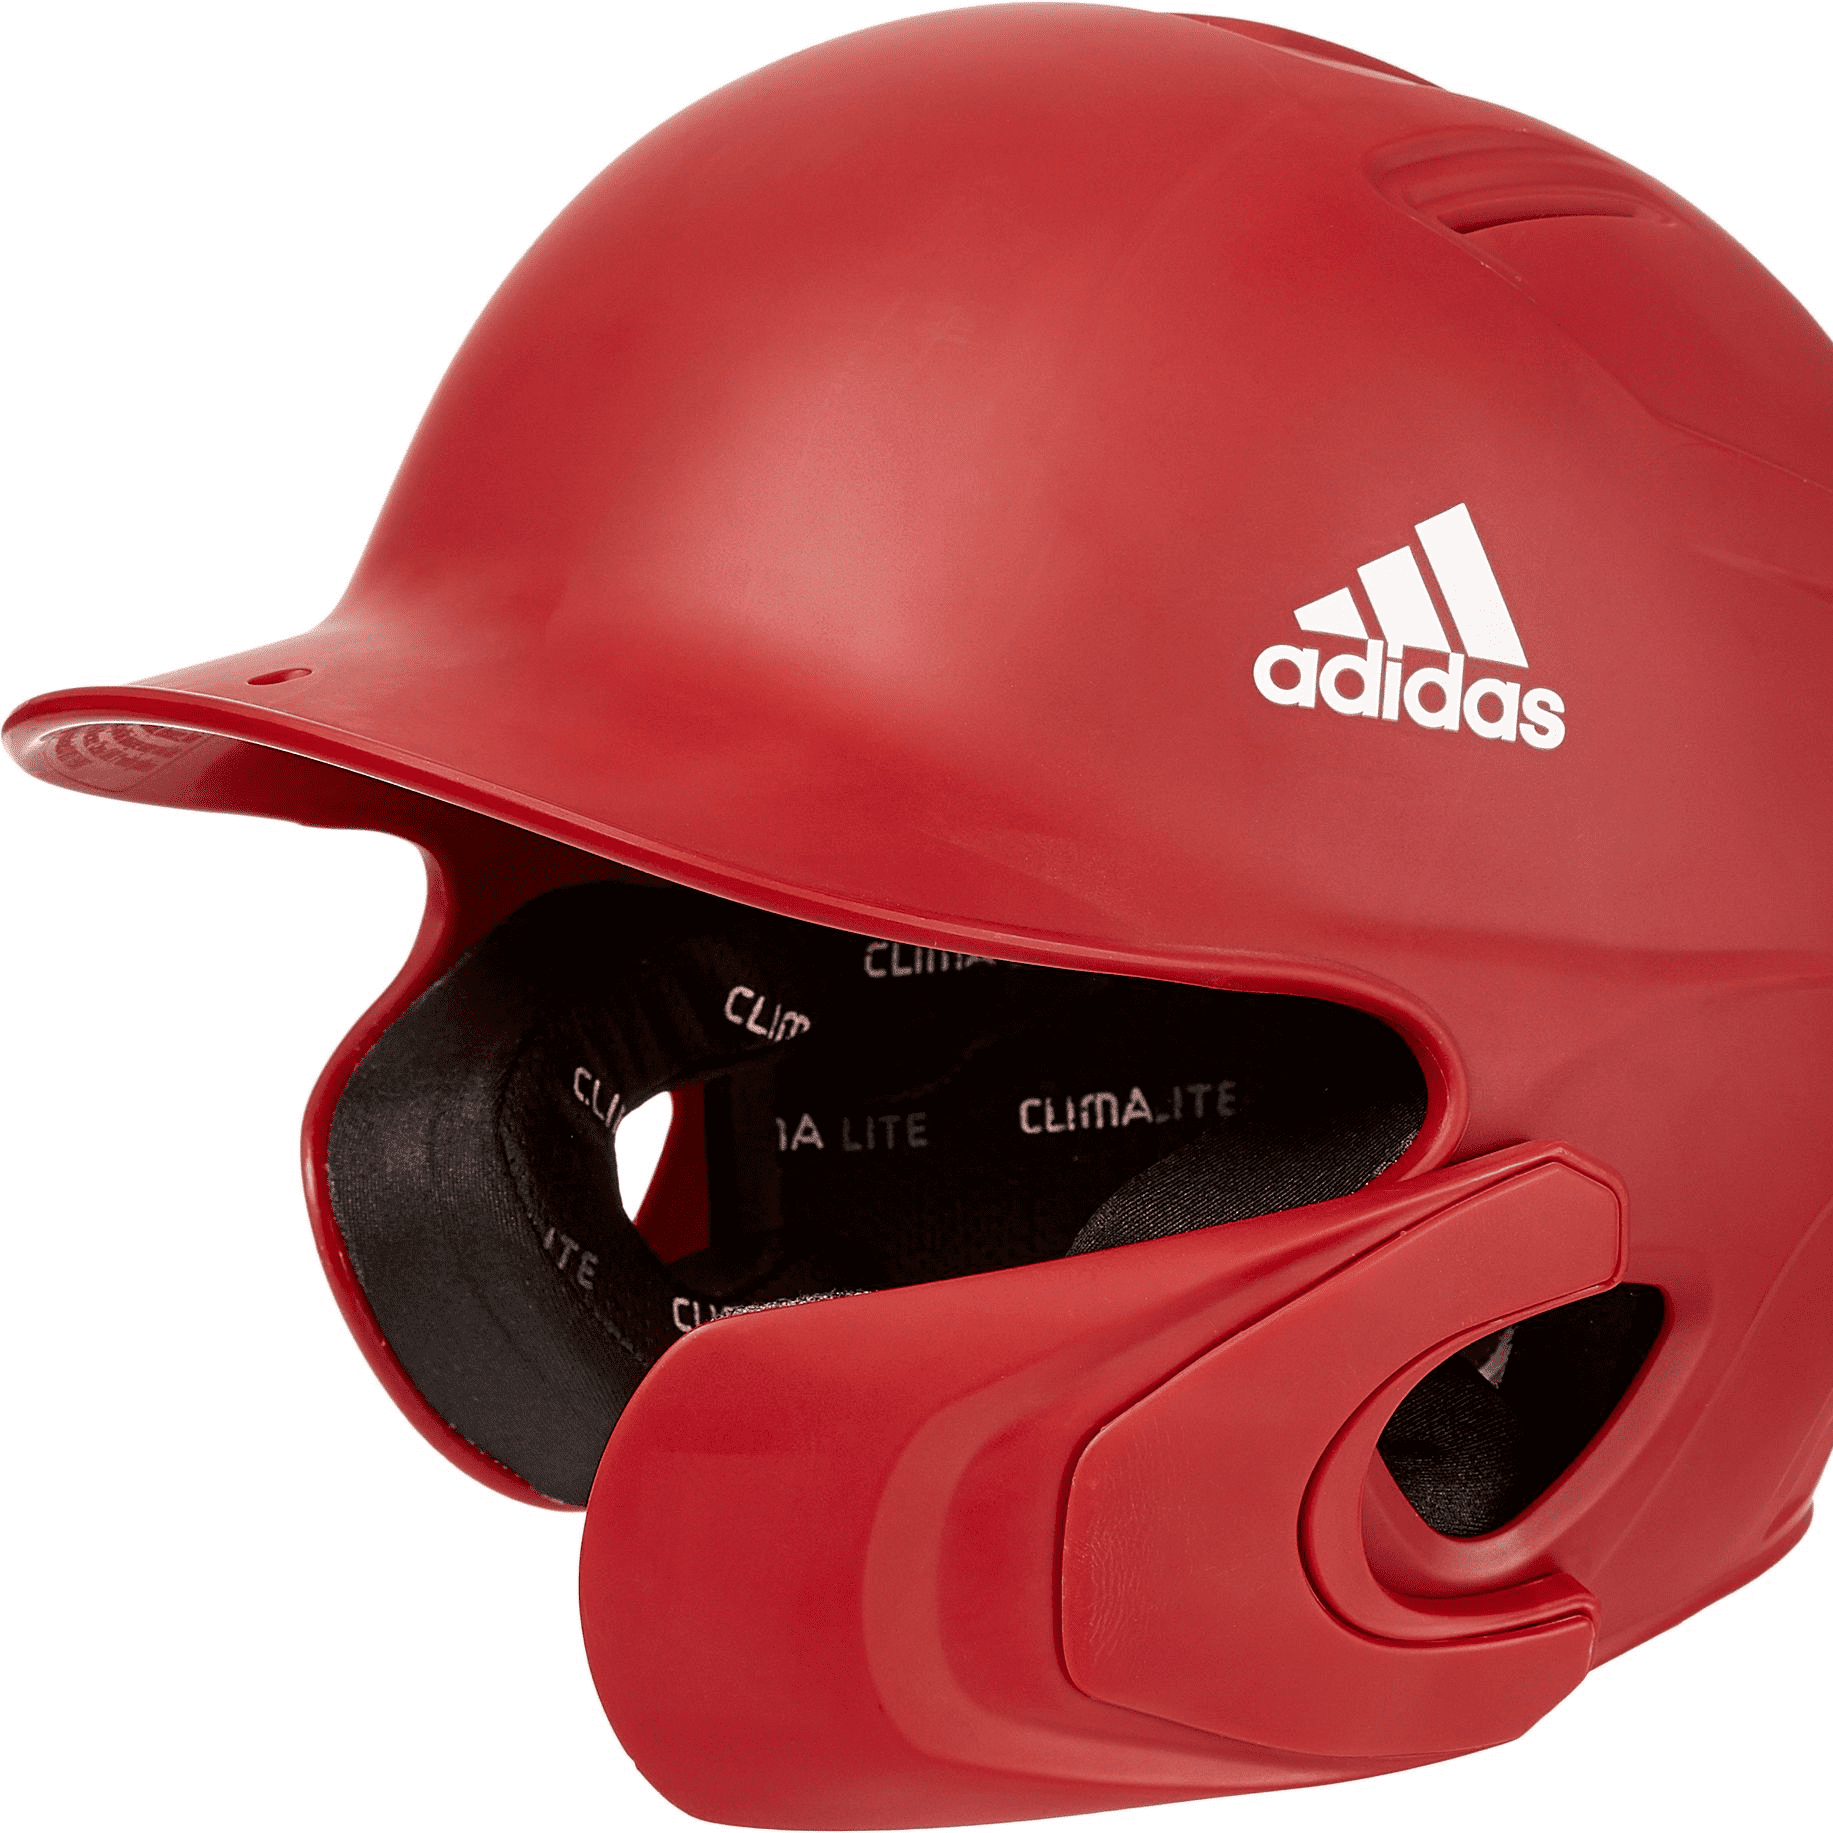 adidas baseball helmet face guard